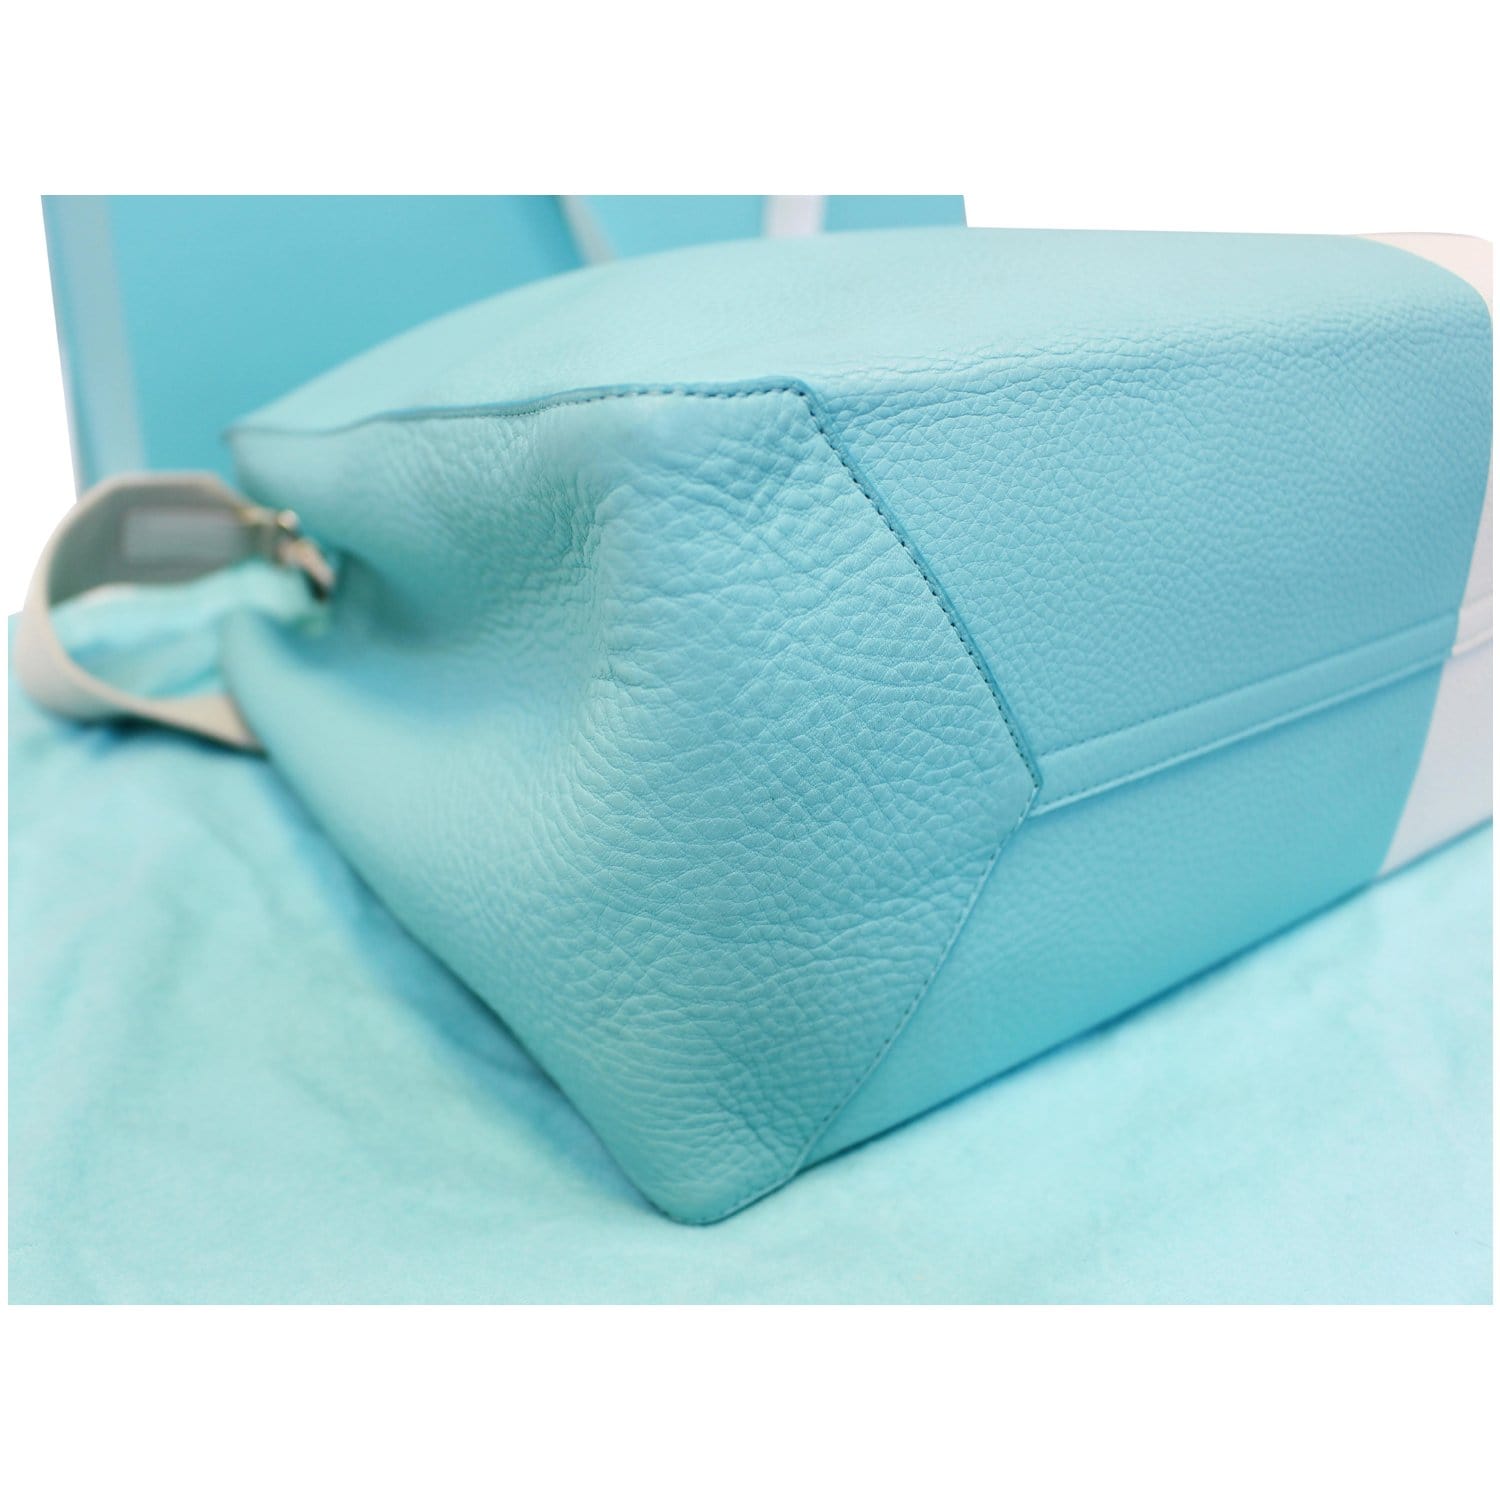 tiffany blue birkin bag